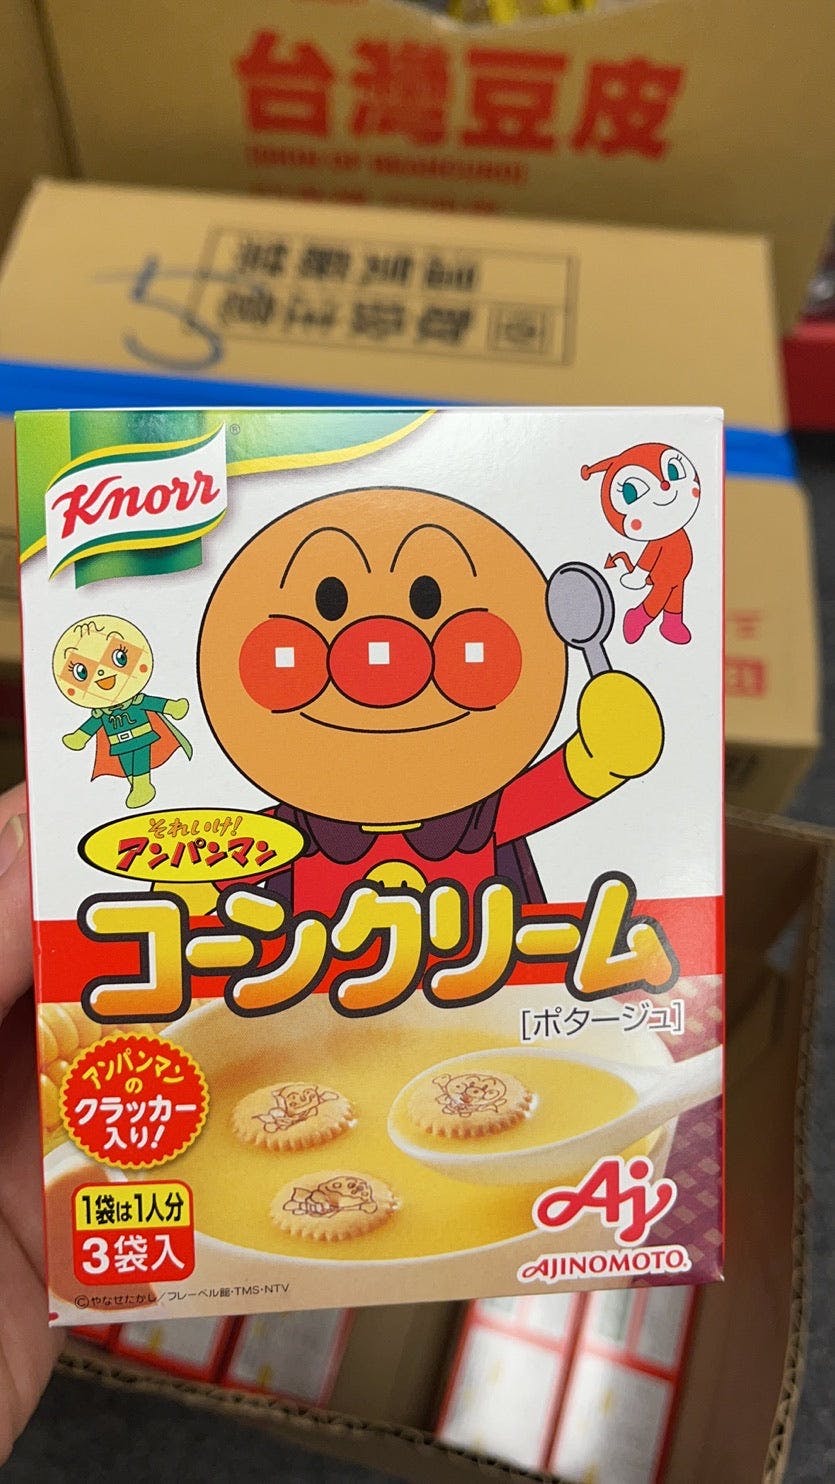 Knorr Japanese Anpanman Corn Cream Soup, 2 oz (59g)